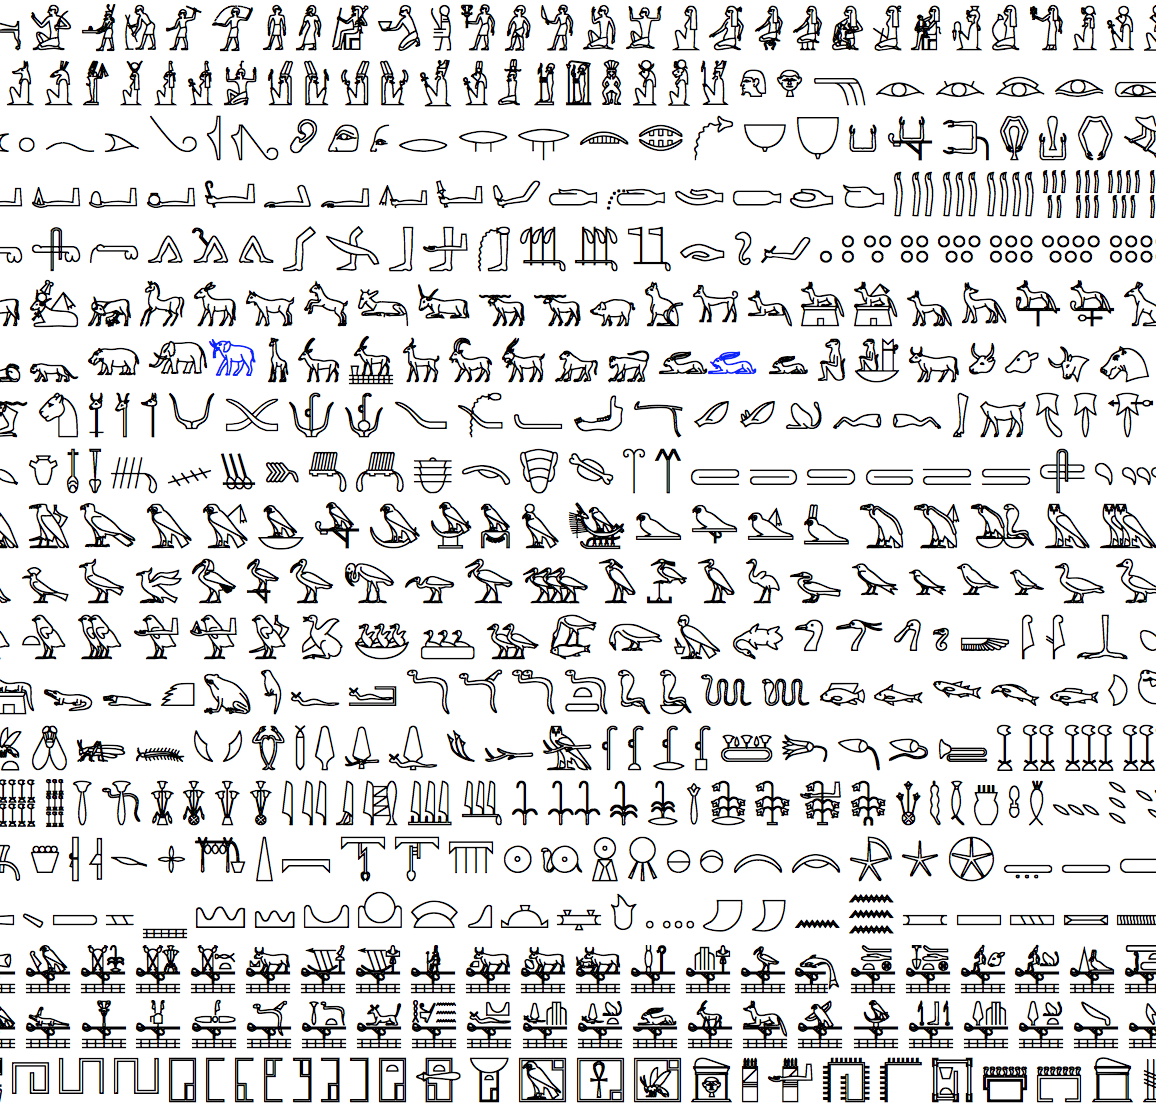 Unicode Chart Egyptian